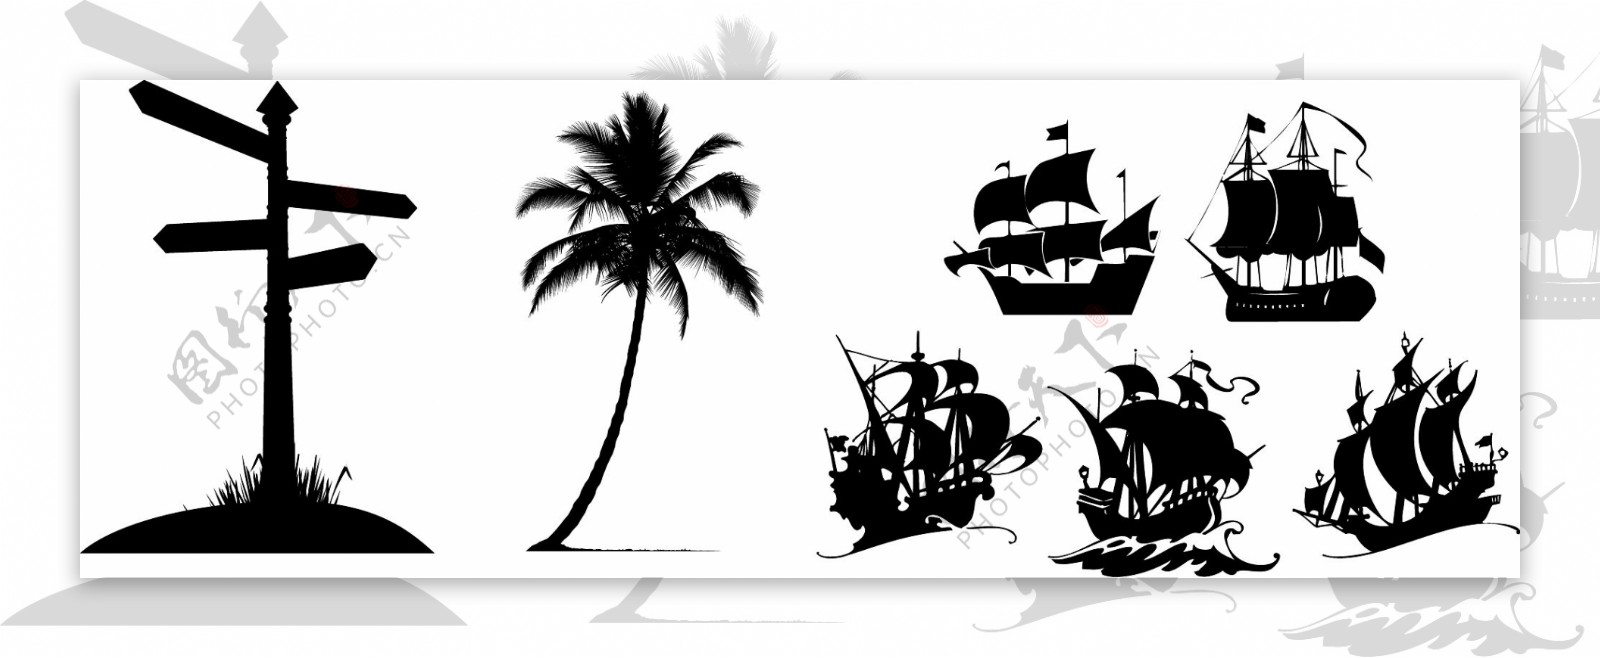 道路标志椰子树帆船剪影图标素材